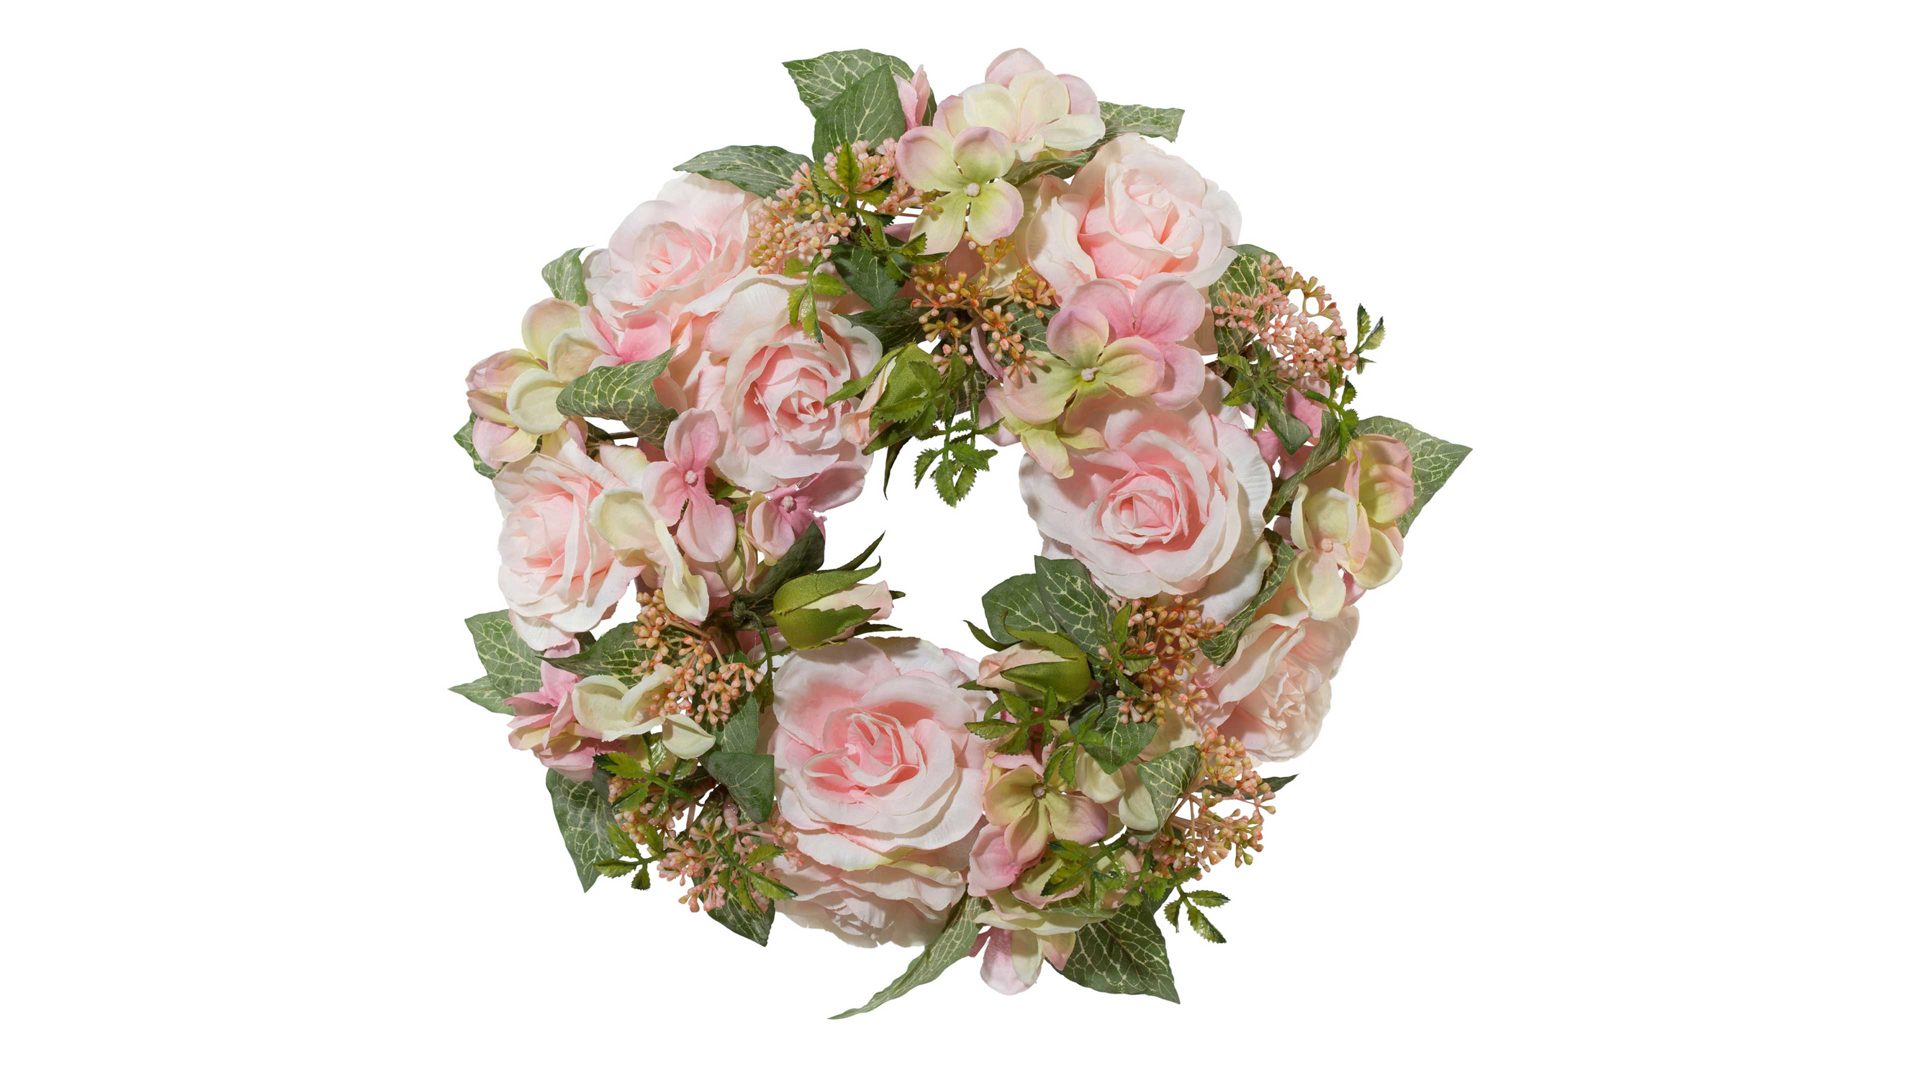 Kranz Gasper gmbh aus Stoff in Pastellfarben Rosenkranz rosafarbene Textilblüten – Durchmesser ca. 33 cm